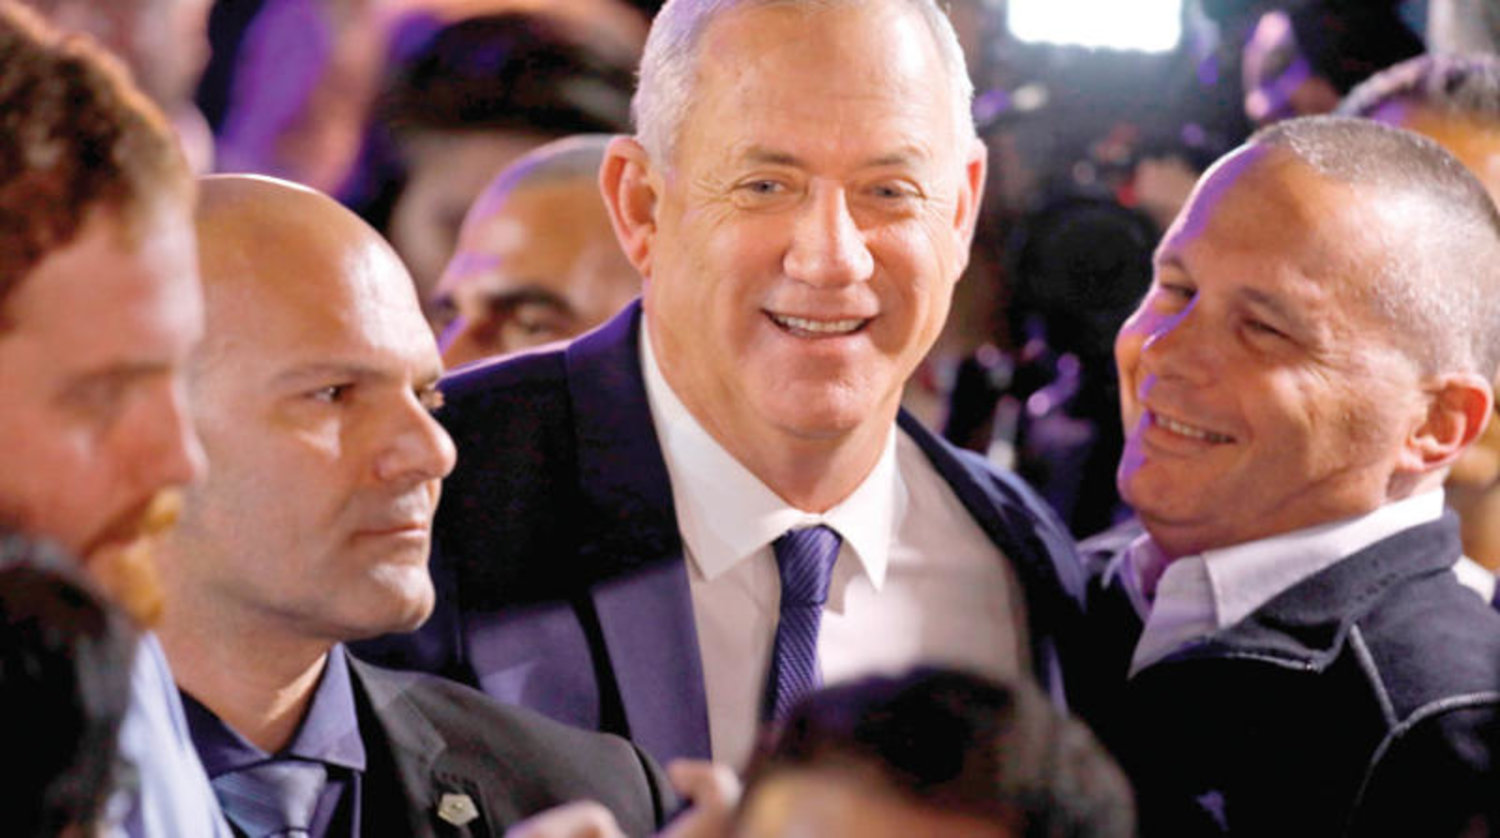 رئيس حزب «كحول لفان» مع الناخبين الداعمين له صبيحة الانتخابات الإسرائيلية في 3 مارس (أ.ف.ب)